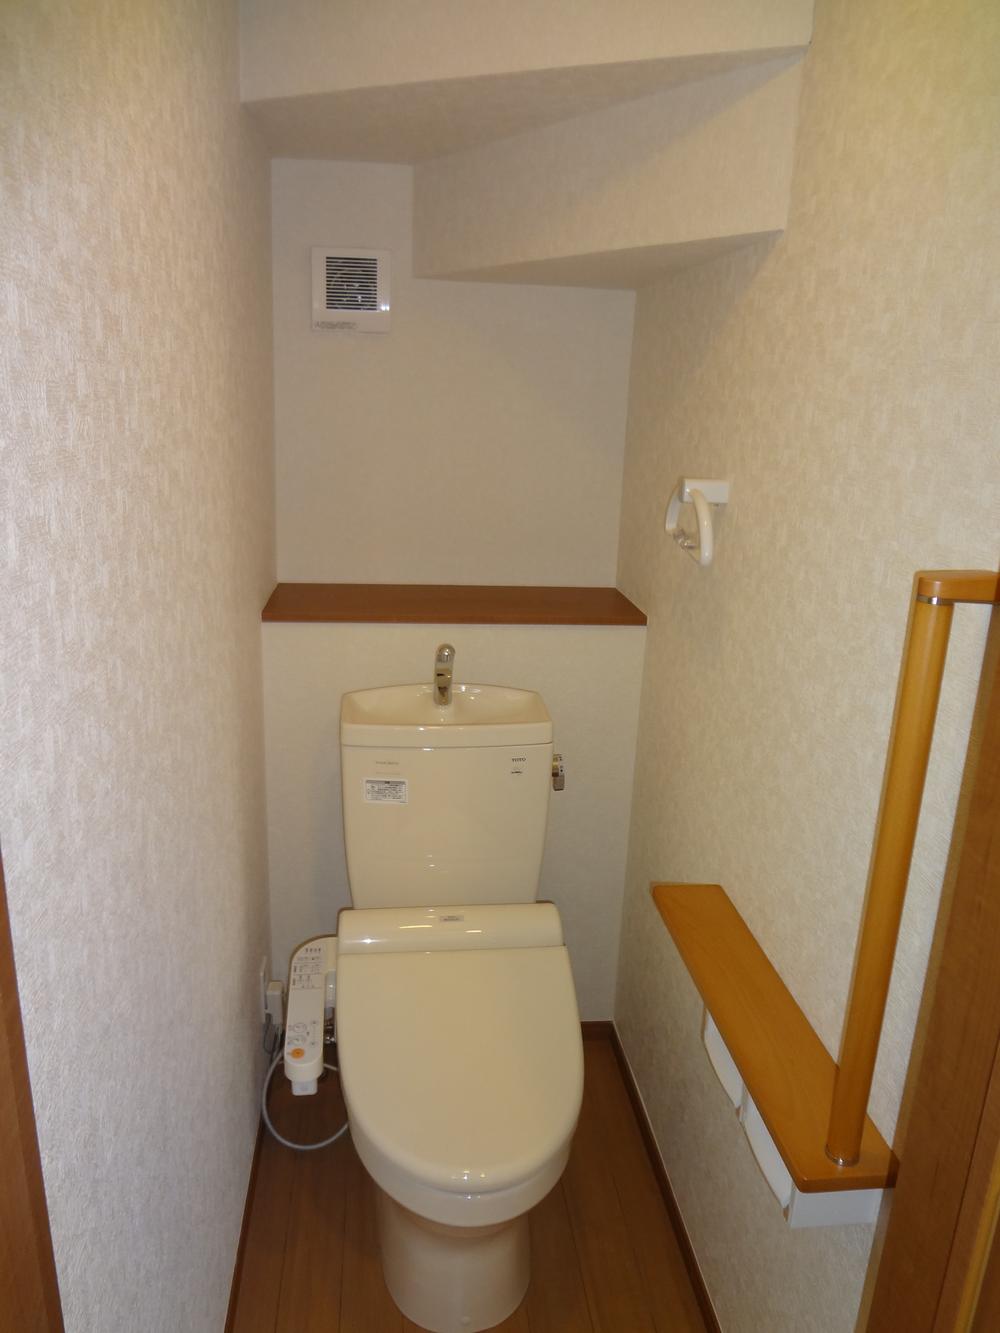 Toilet. Building 2 toilet enforcement example photo